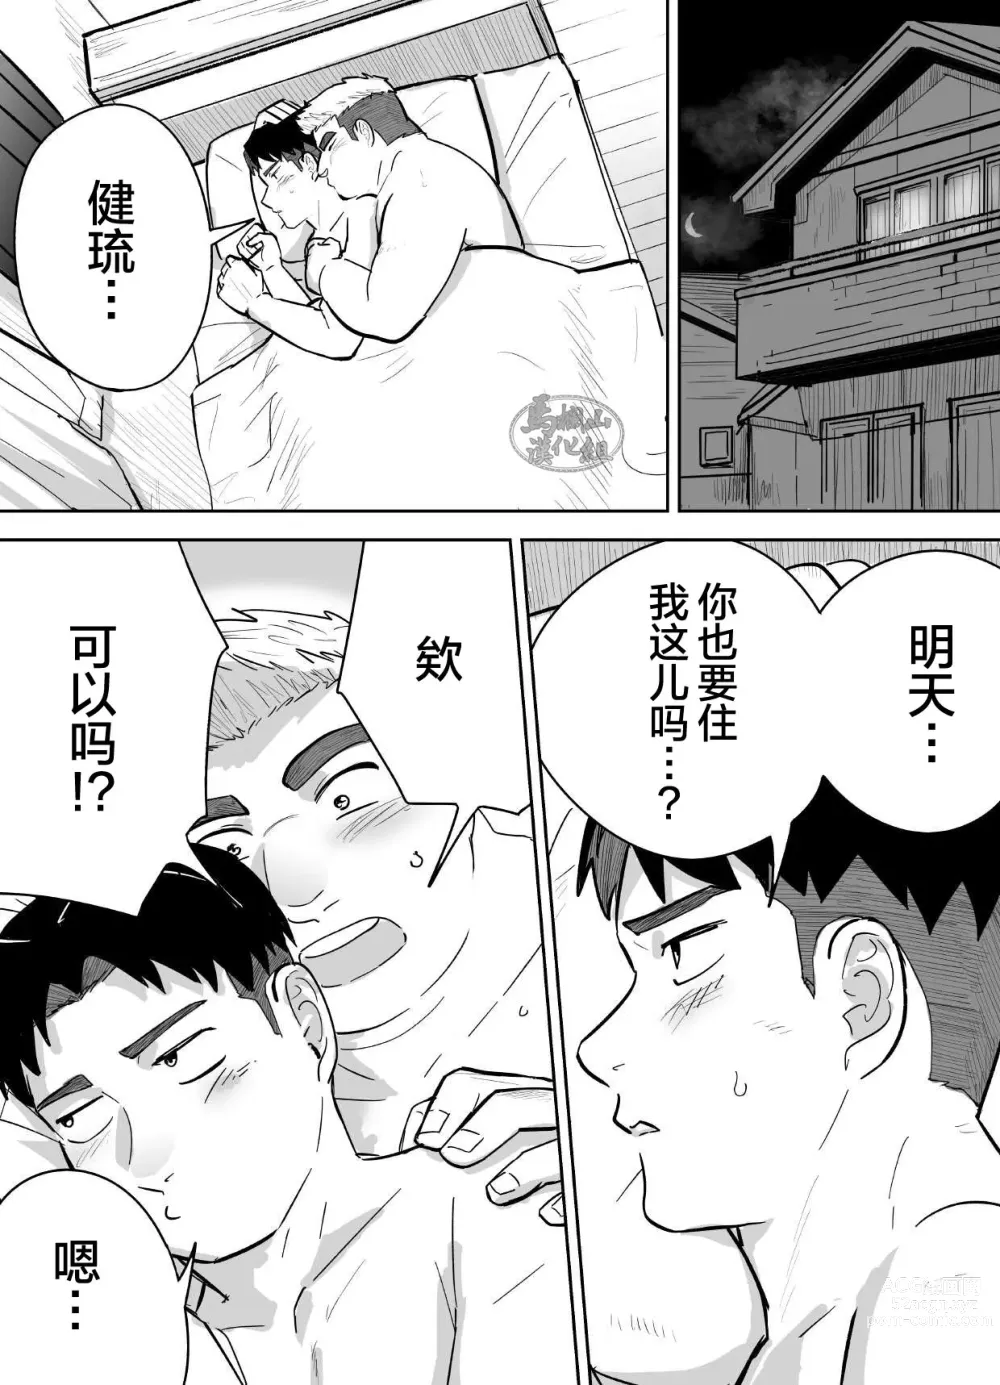 Page 41 of manga 片思いしてるガチムチ同級生に襲われる話